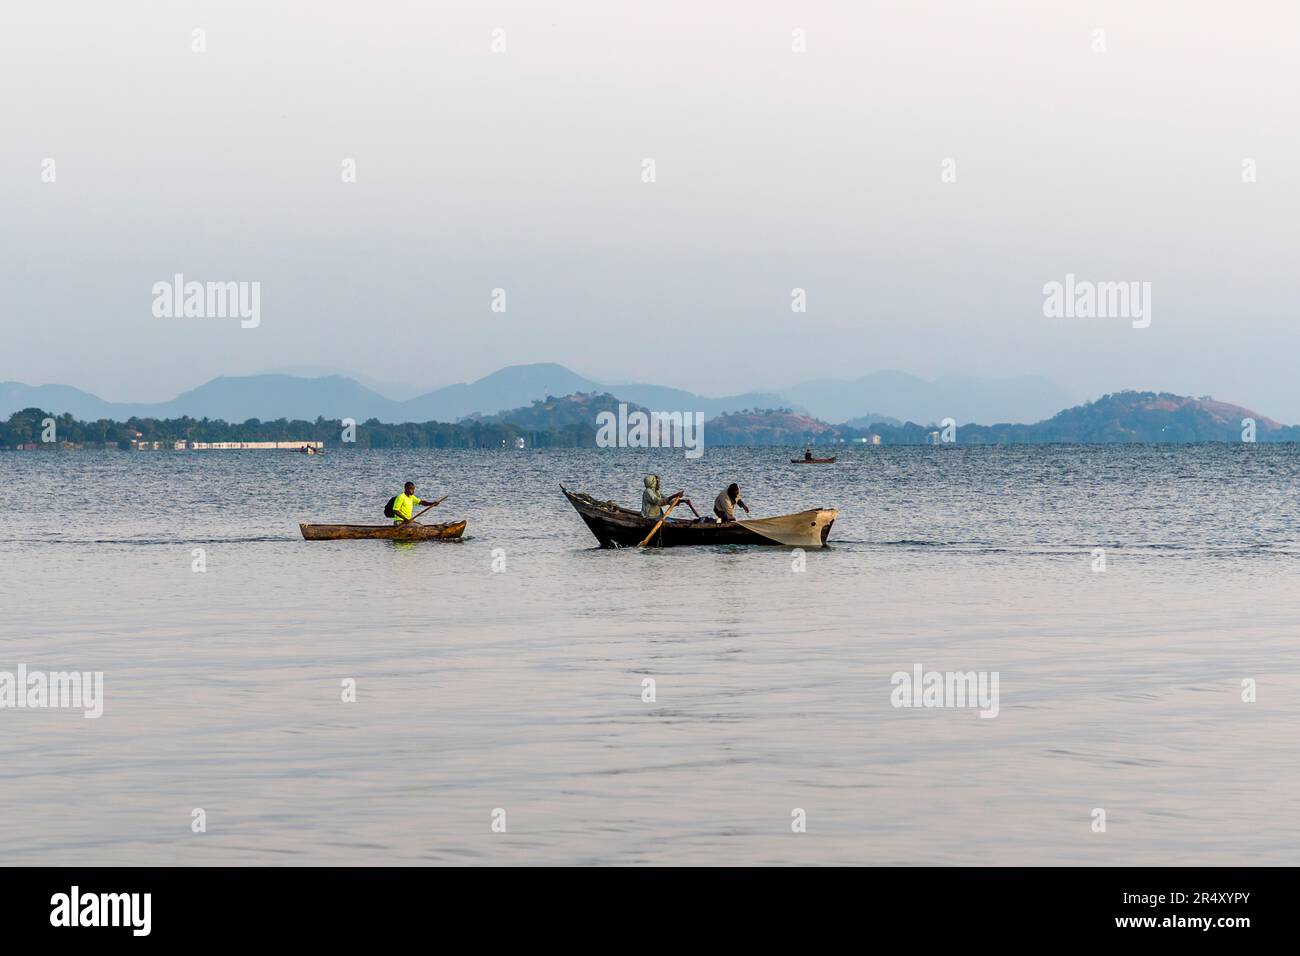 Lago Malawi, confine meridionale vicino a Mangochi. Il lago interno è il terzo lago più grande dell'Africa dopo il lago Victoria e il lago Tanganyika e occupa circa il 20% dell'area totale del Malawi. Foto Stock